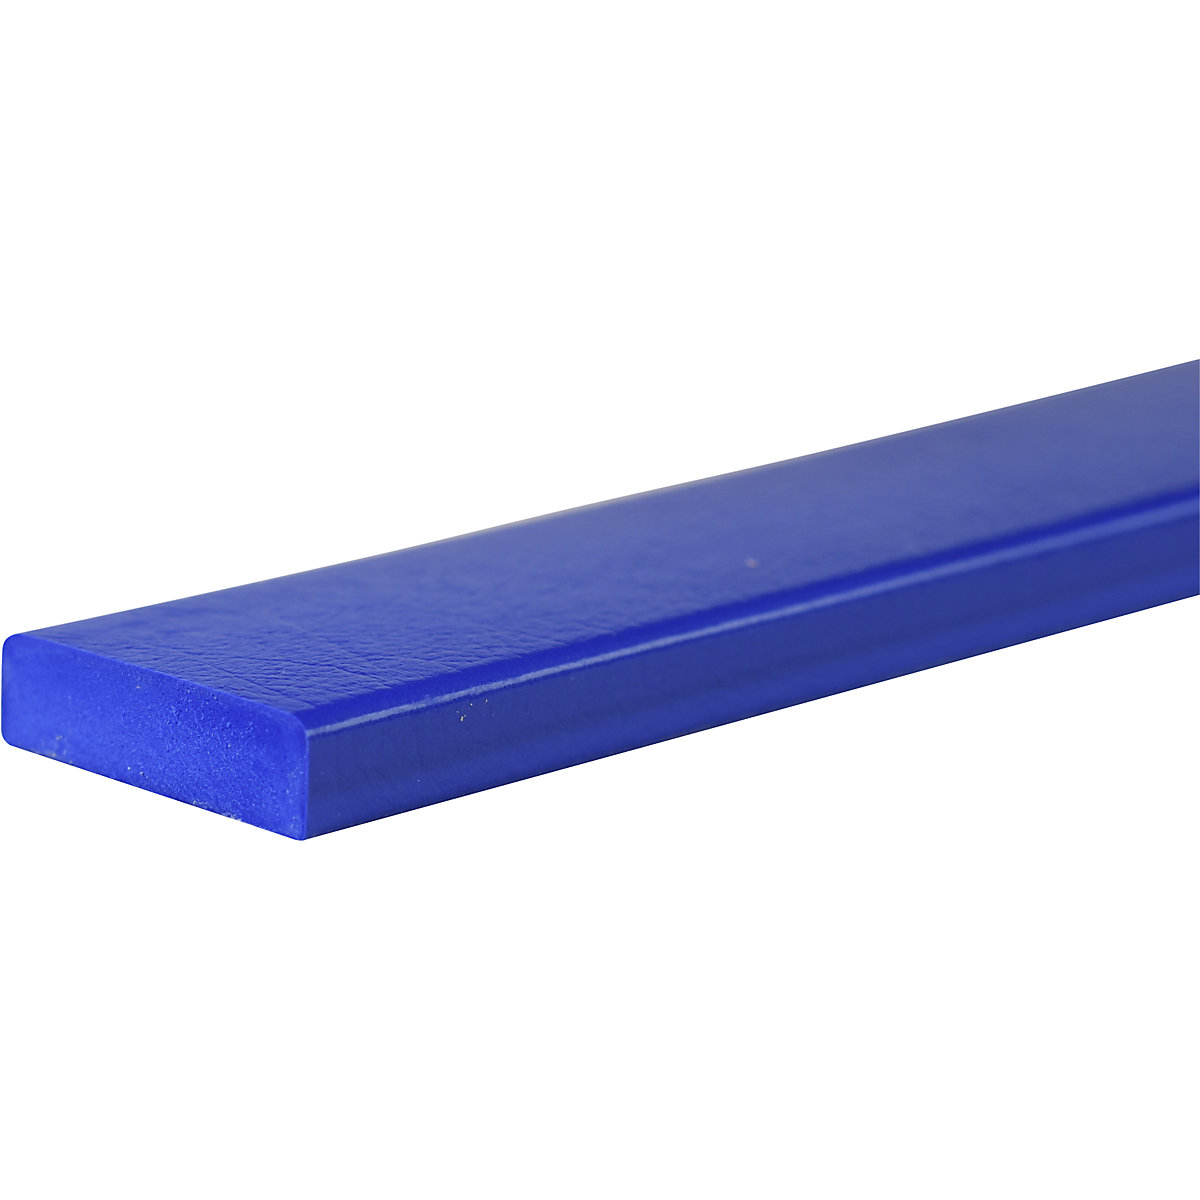 Zaščita površin Knuffi® – SHG, tip S, kos 1 m, modre barve-22